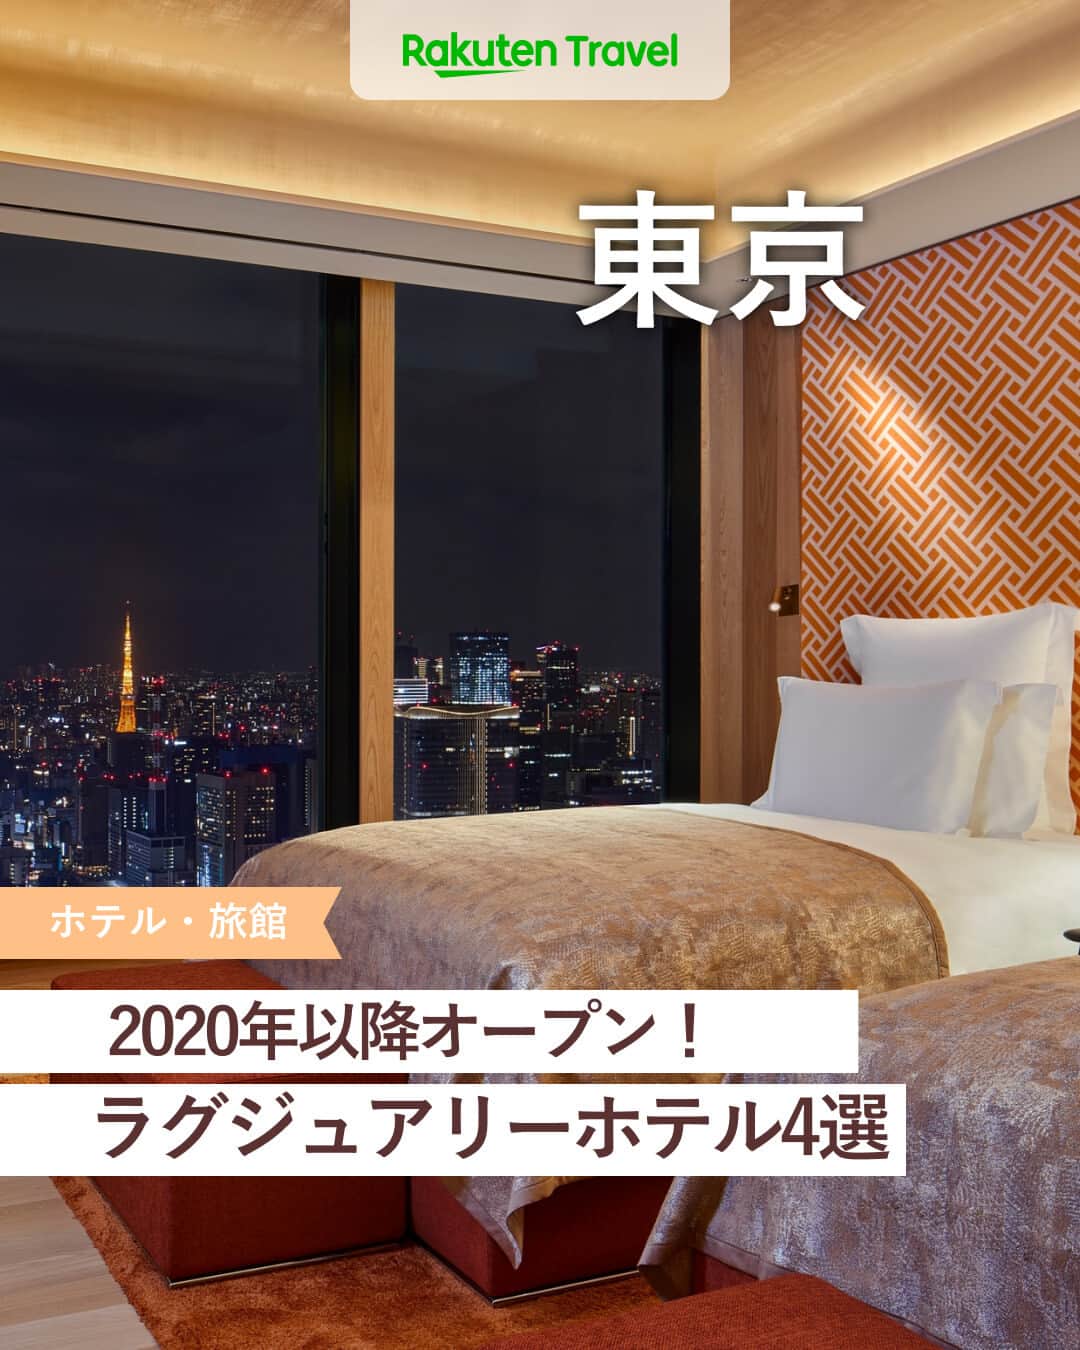 楽天トラベル のインスタグラム：「投稿を保存して見返してね😊 毎日おすすめの観光スポットやホテルを紹介している 楽天トラベル💚 👉@rakutentravel  ーーーーーーーーーーーーー  本日は、2020年以降にオープンした東京のラグジュアリーホテルを紹介します🌹 どのホテルも豪華絢爛で贅沢な非日常感を味わえちゃいます😛 大切な人との記念日旅行やご褒美旅にいかがですか…💕  ーーーーーーーーーーーーー  1　#東京エディション虎ノ門 2　#ブルガリホテル東京 3　#キンプトン新宿東京 4　#BELLUSTARTOKYOAPanPacificHotel  ーーーーーーーーーーーーー  #rakutentravel をつけて投稿してくだされば、 あなたの撮った写真が楽天トラベルアカウントに掲載されるかも👀  旅の計画に夢中になれるインスタマガジン👜 楽天トラベルをフォローして理想の旅をみつけてね🛫@rakutentravel  いってみたいと思った人は気軽にコメント欄にスタンプ送ってね💕  ーーーーーーーーーーーーー」